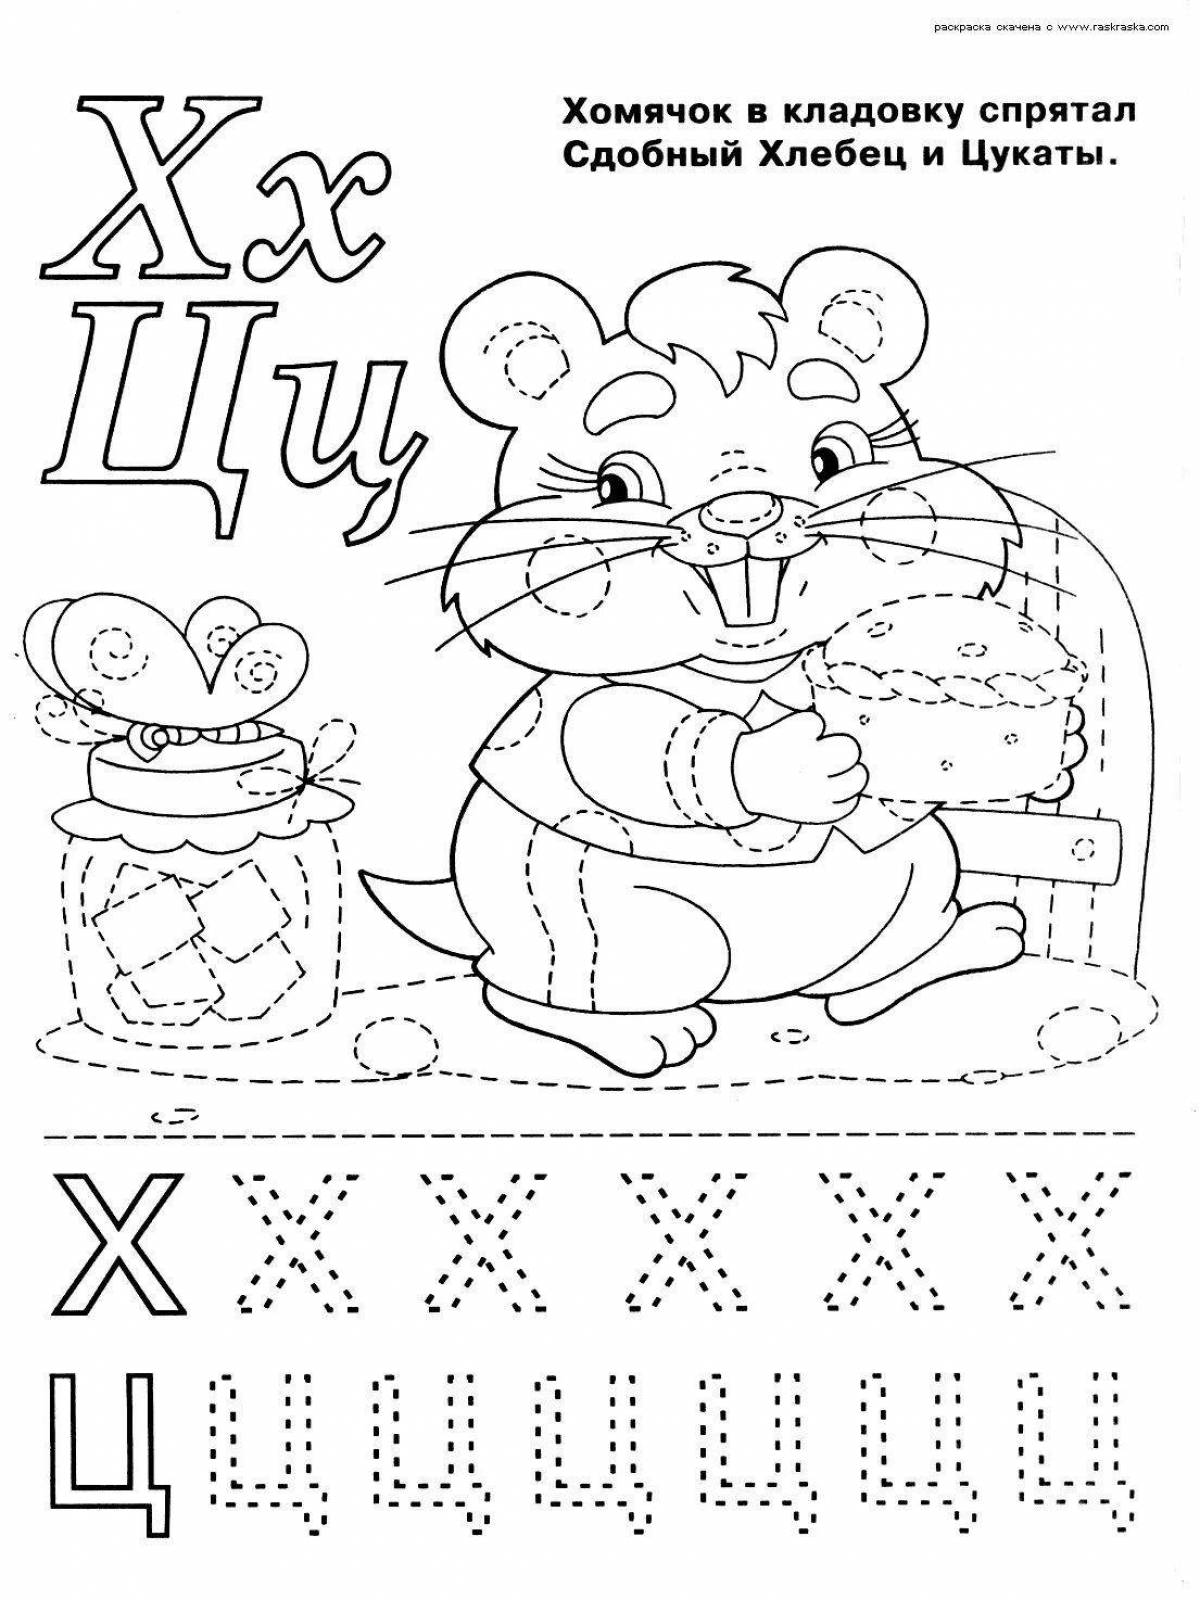 Adorable alphabet x coloring book